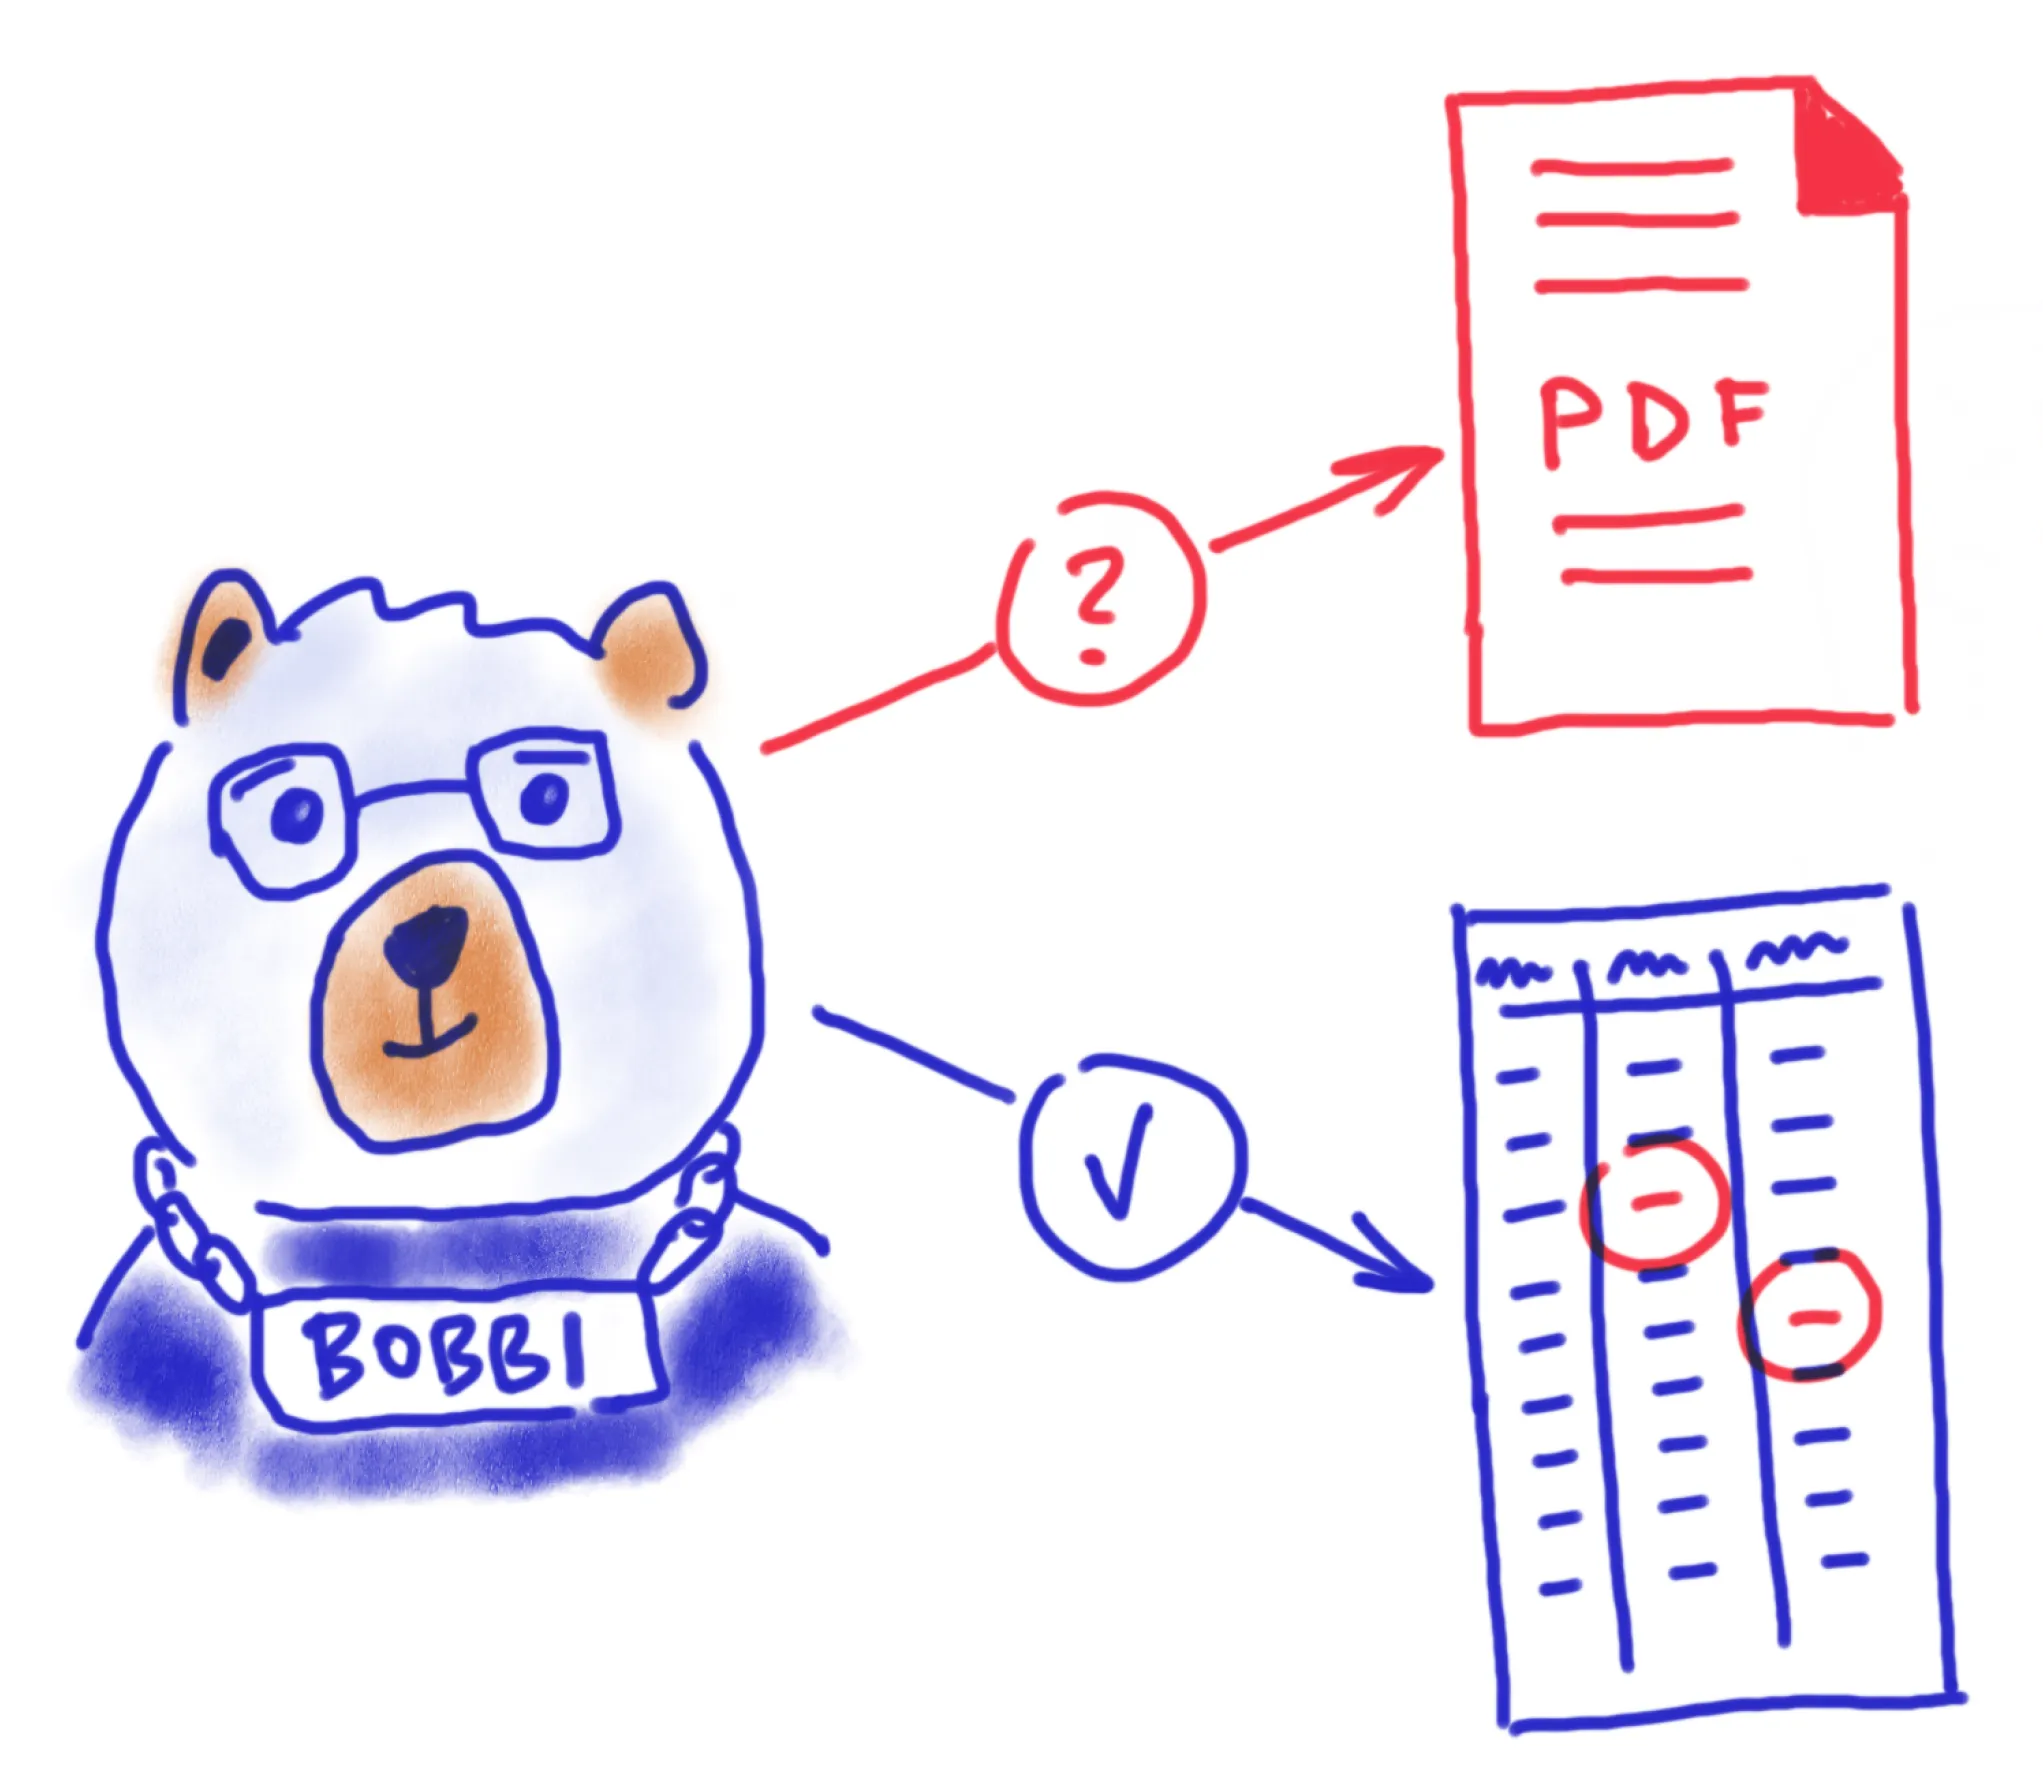 Informationen aus einer PDF können von Computerprogrammen nur sehr begrenzt verarbeitet werden.